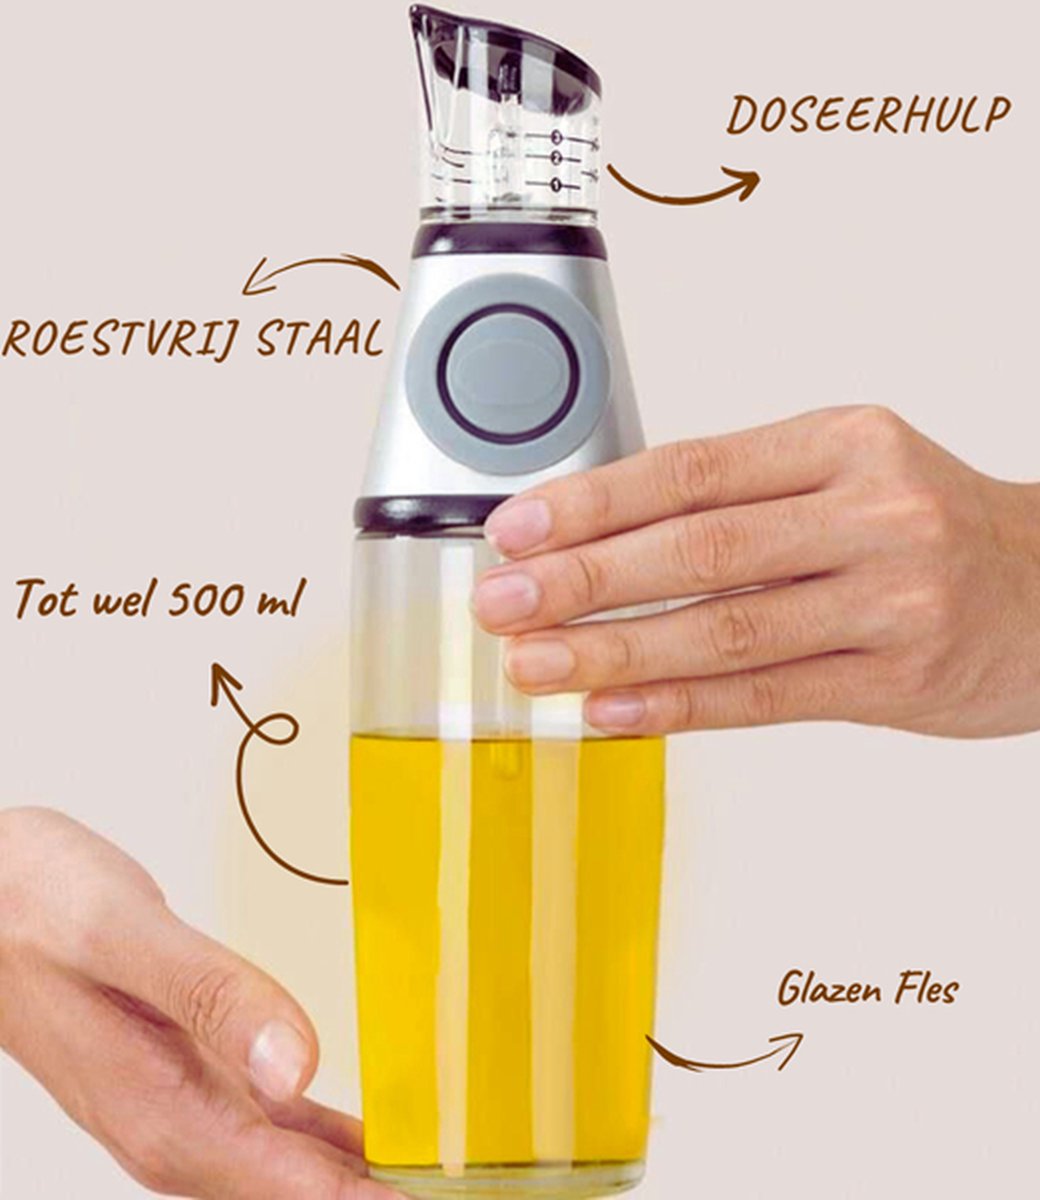 PROKING Bouteille d'huile d'olive avec bec verseur - Bouteille d'huile d' olive - Bec